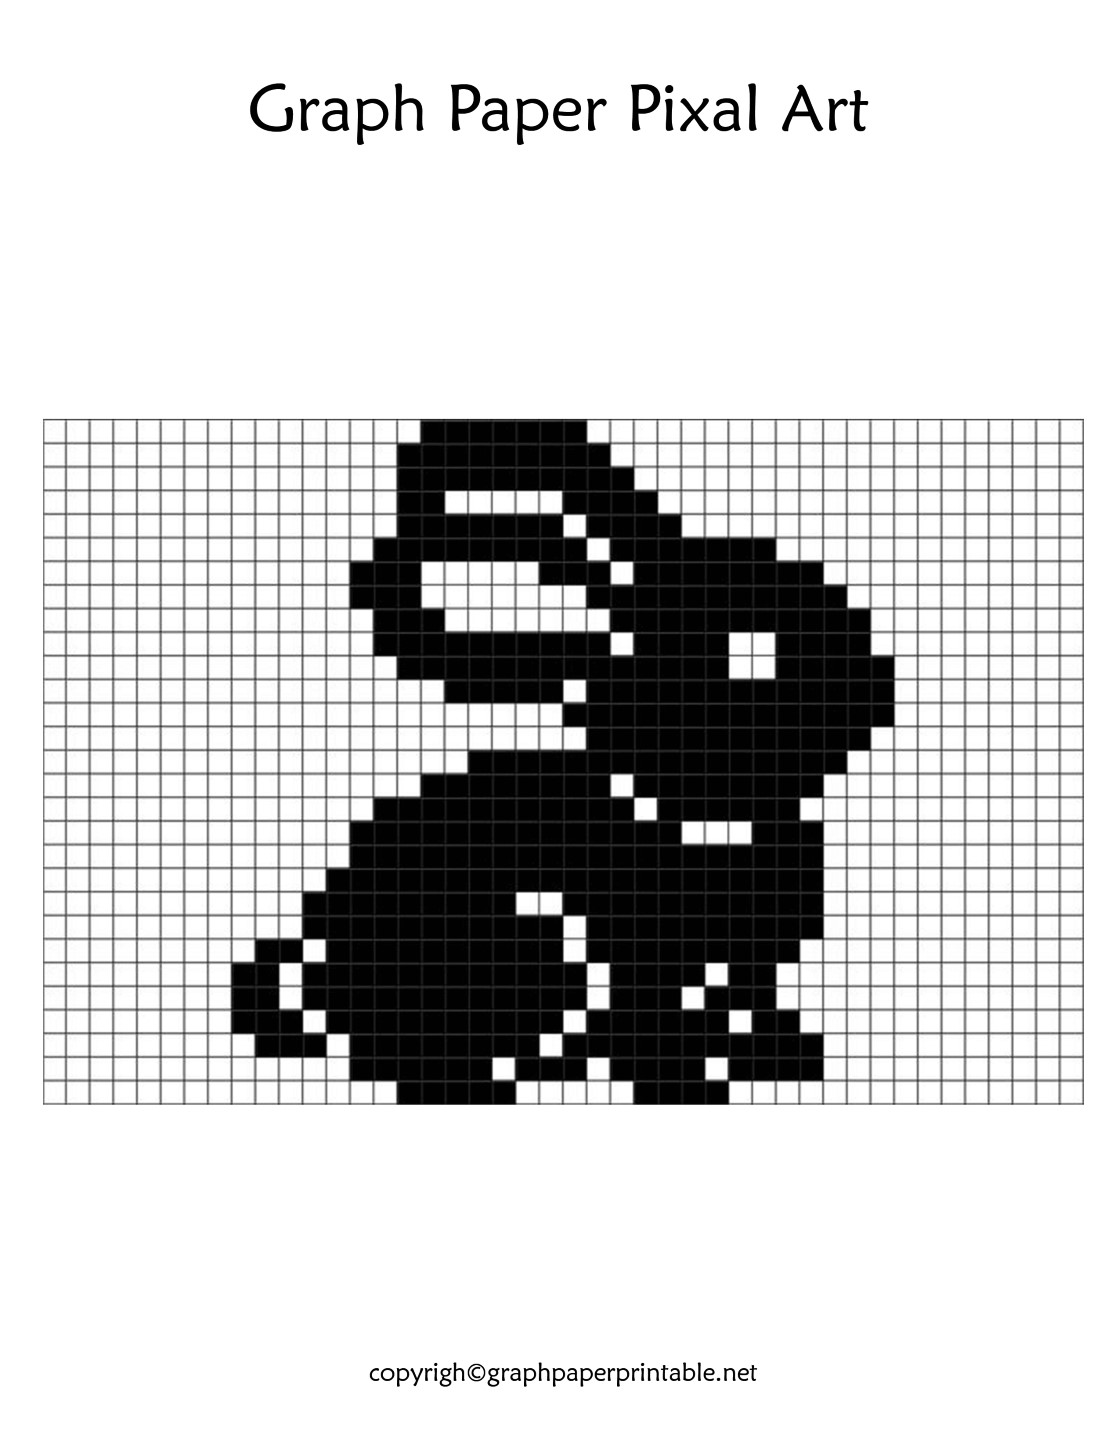 Graph Paper Pixel Art Template